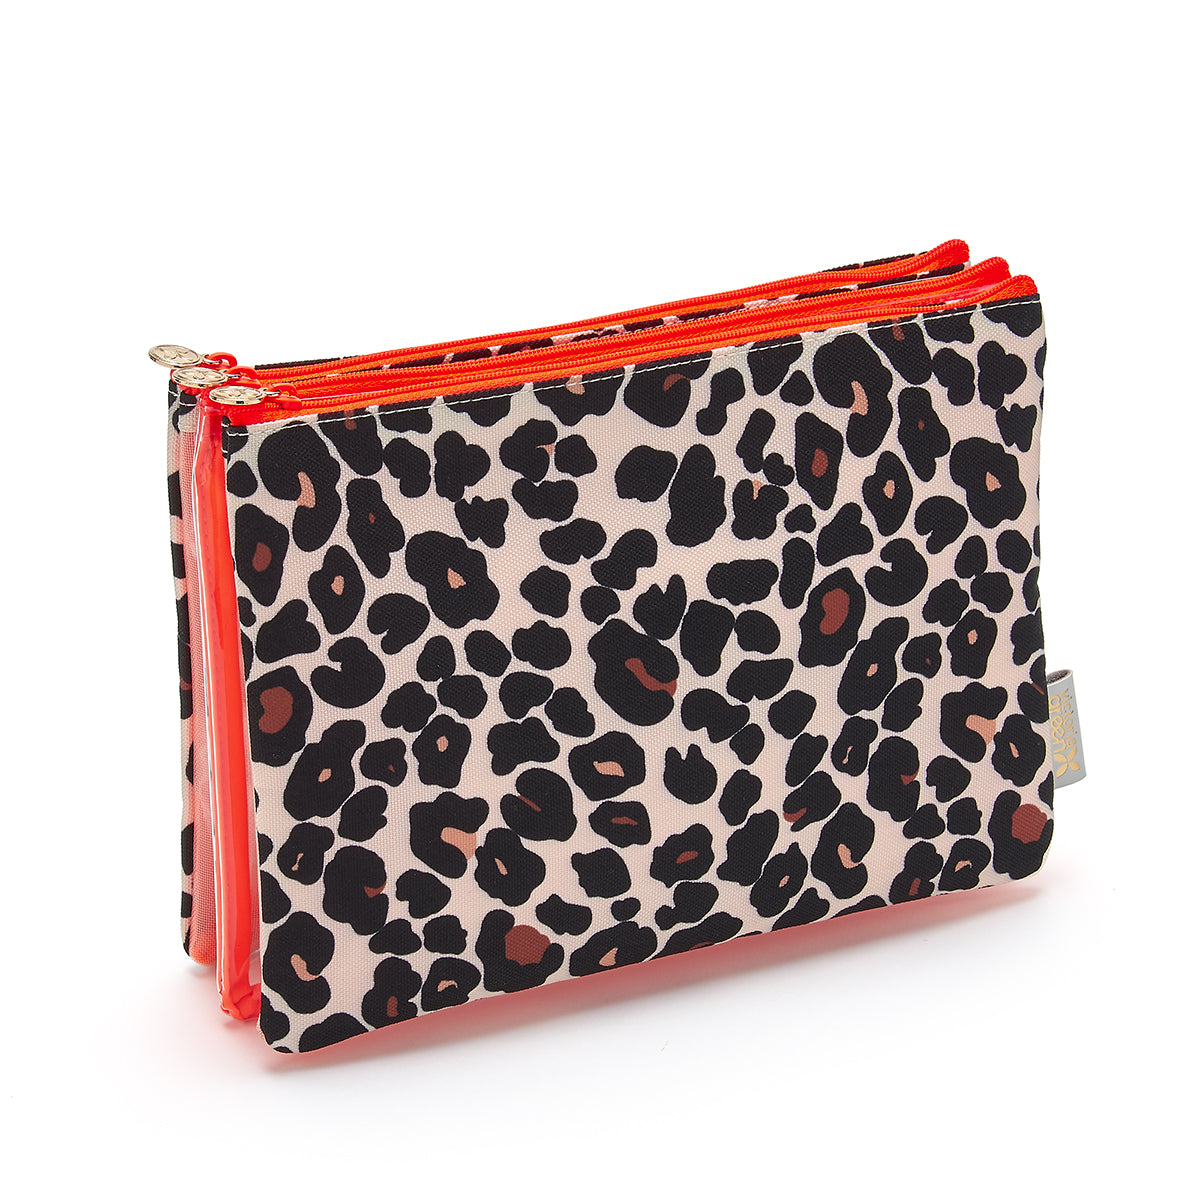 Glamlily 3 Pack Cheetah Print Makeup Bag Set, Cosmetic Travel Bags (3 Sizes)